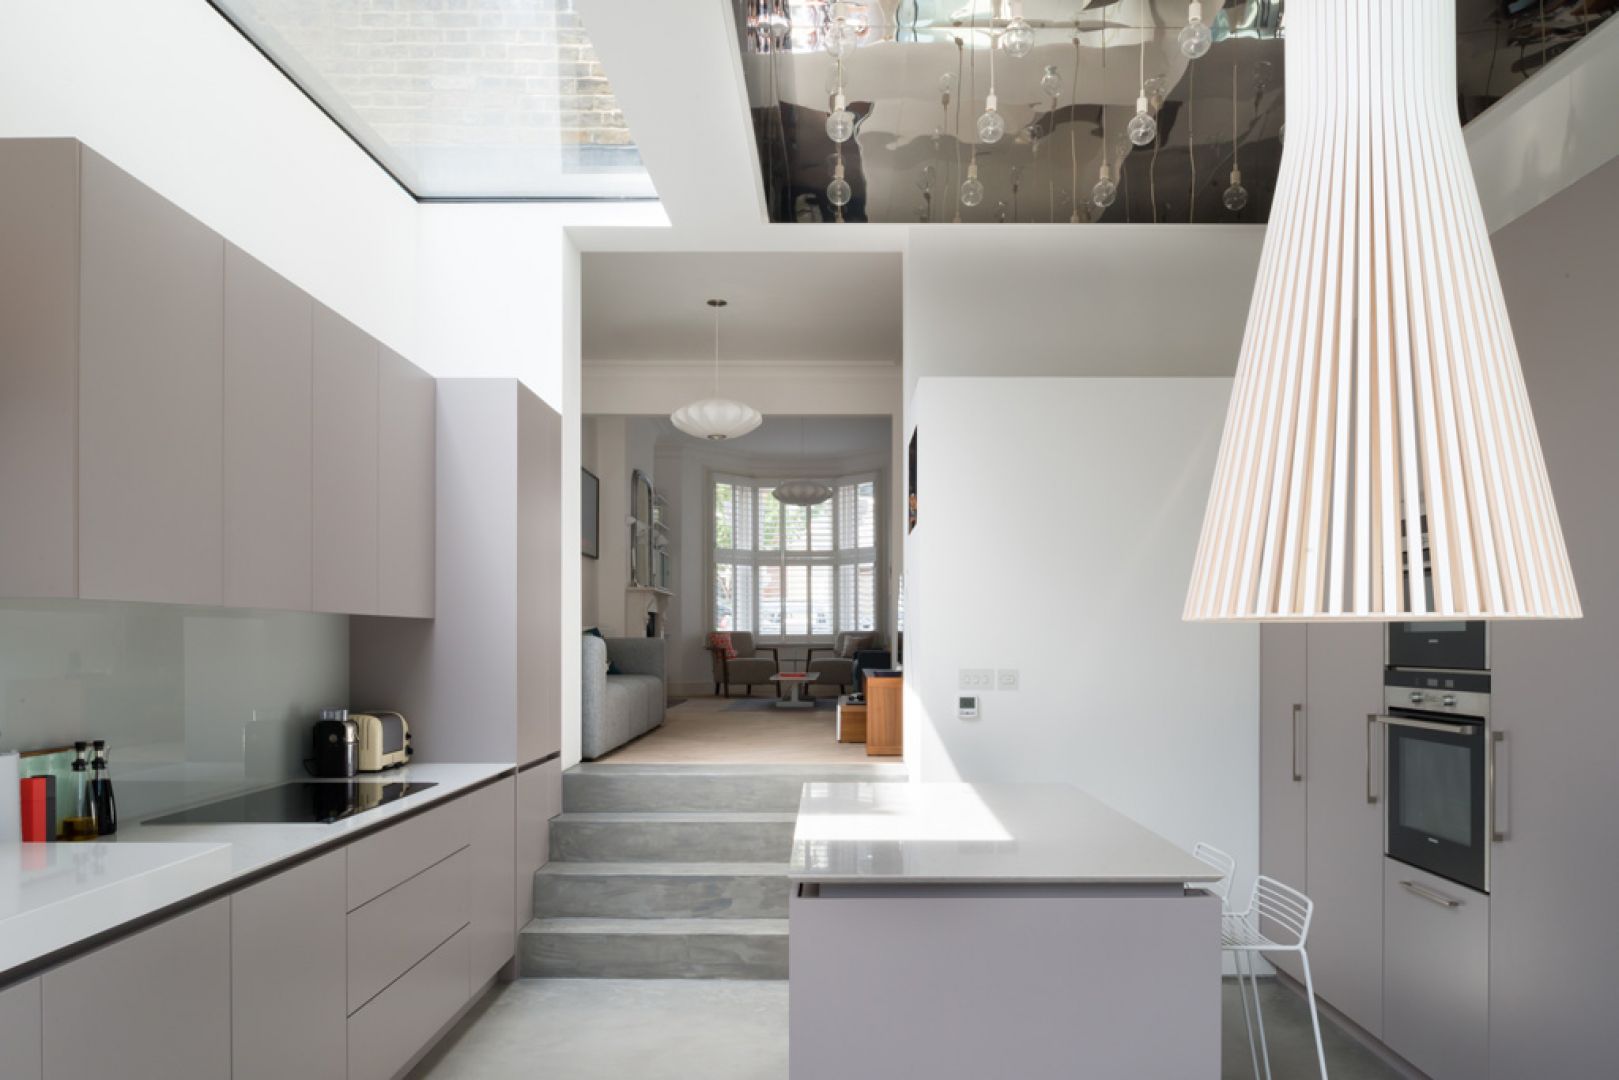 Kuchnię w domu Highbury zaprojektowano w bardzo nowoczesnym, minimalistycznym stylu. Fot. Architecture For London